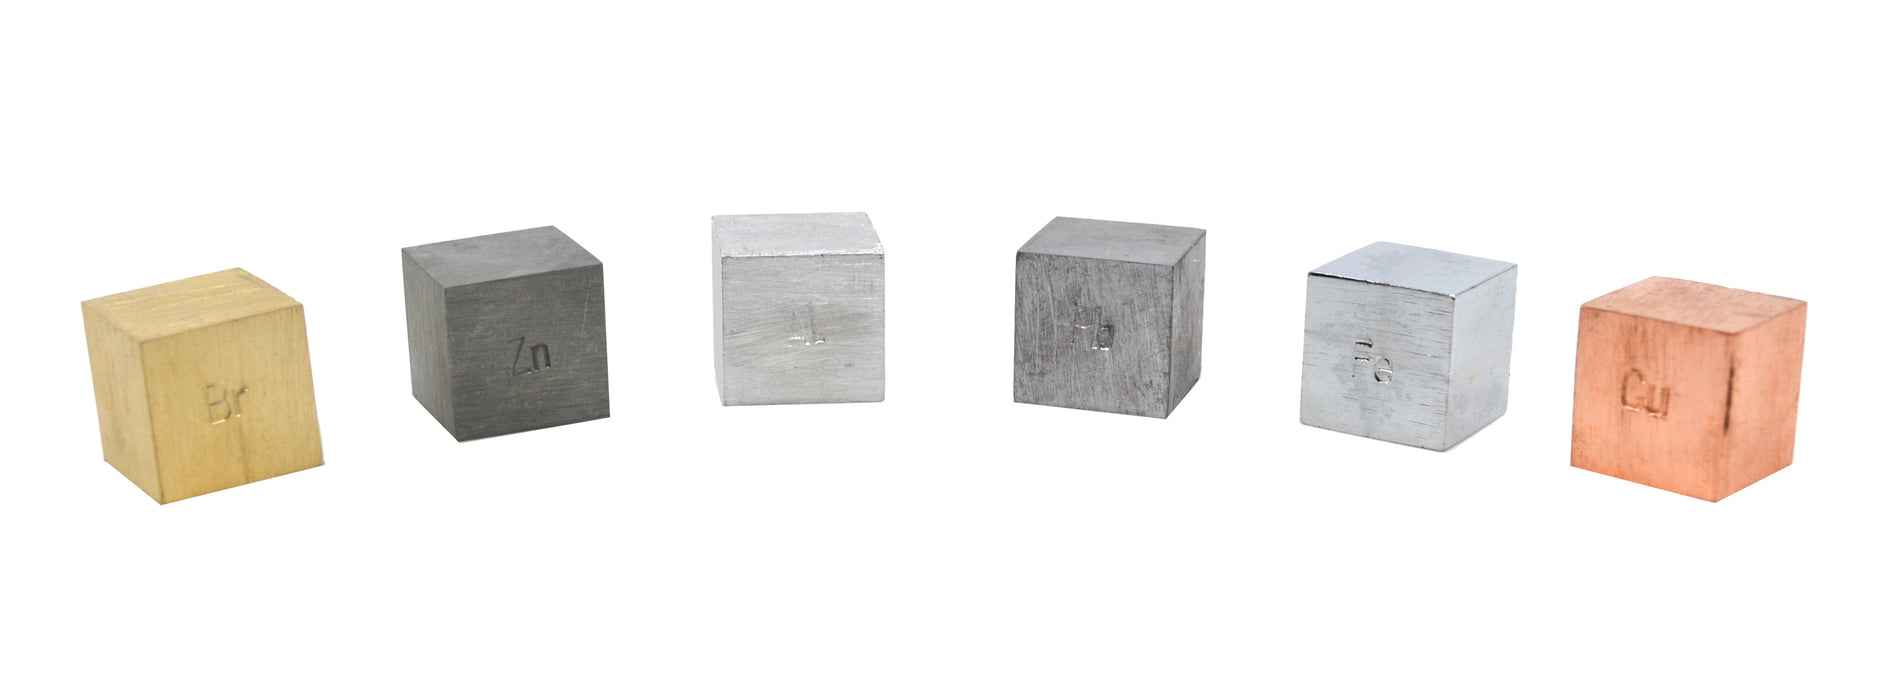 Density Cube Set - 6 Metals